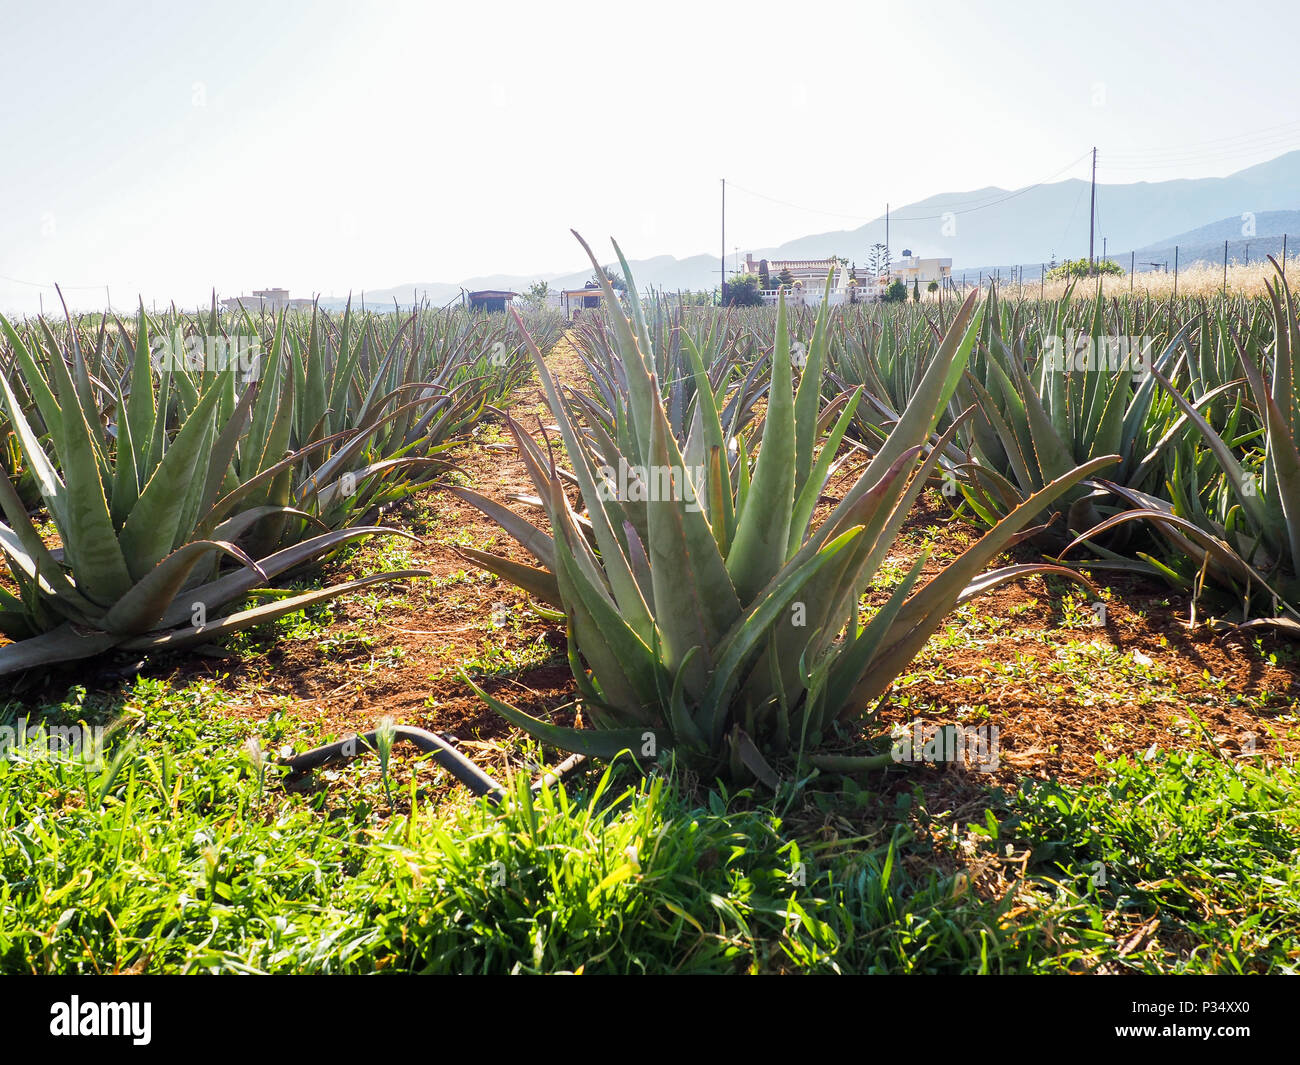 Anbau von Aloe vera Plantage, gesunde Pflanze für Medizin, Kosmetik,  Hautpflege verwendet, Dekoration Stockfotografie - Alamy